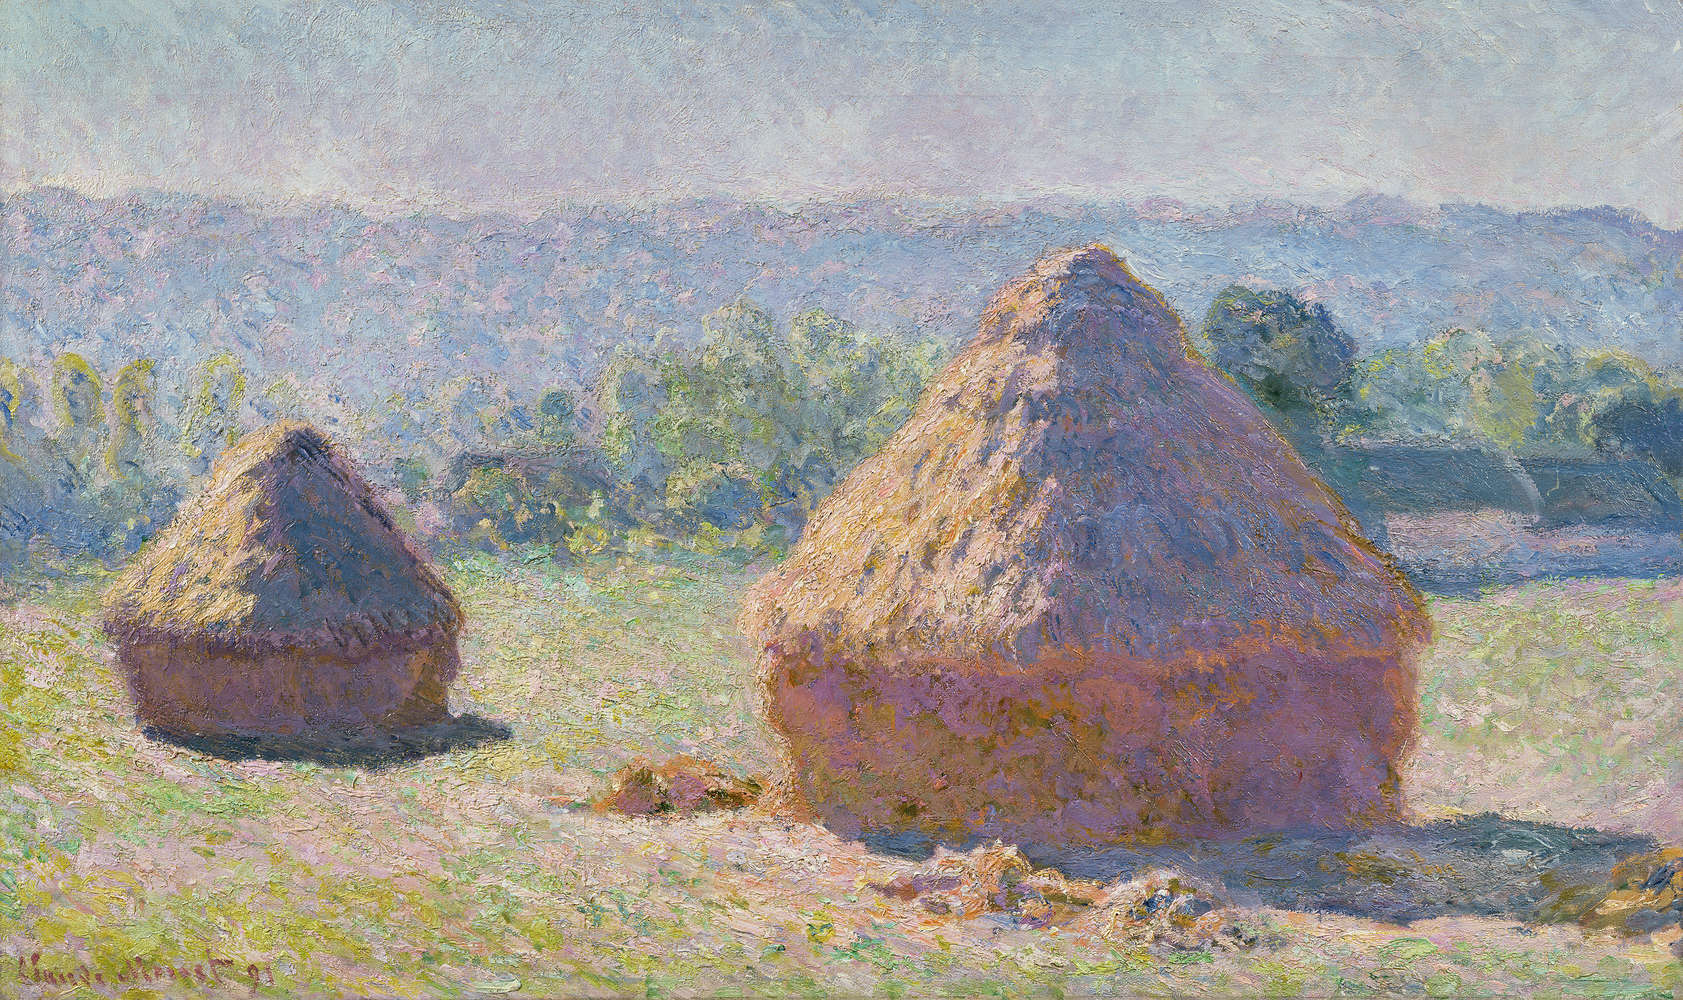             Muurschildering "Stroschuur aan het einde van de zomer" van Claude Monet
        